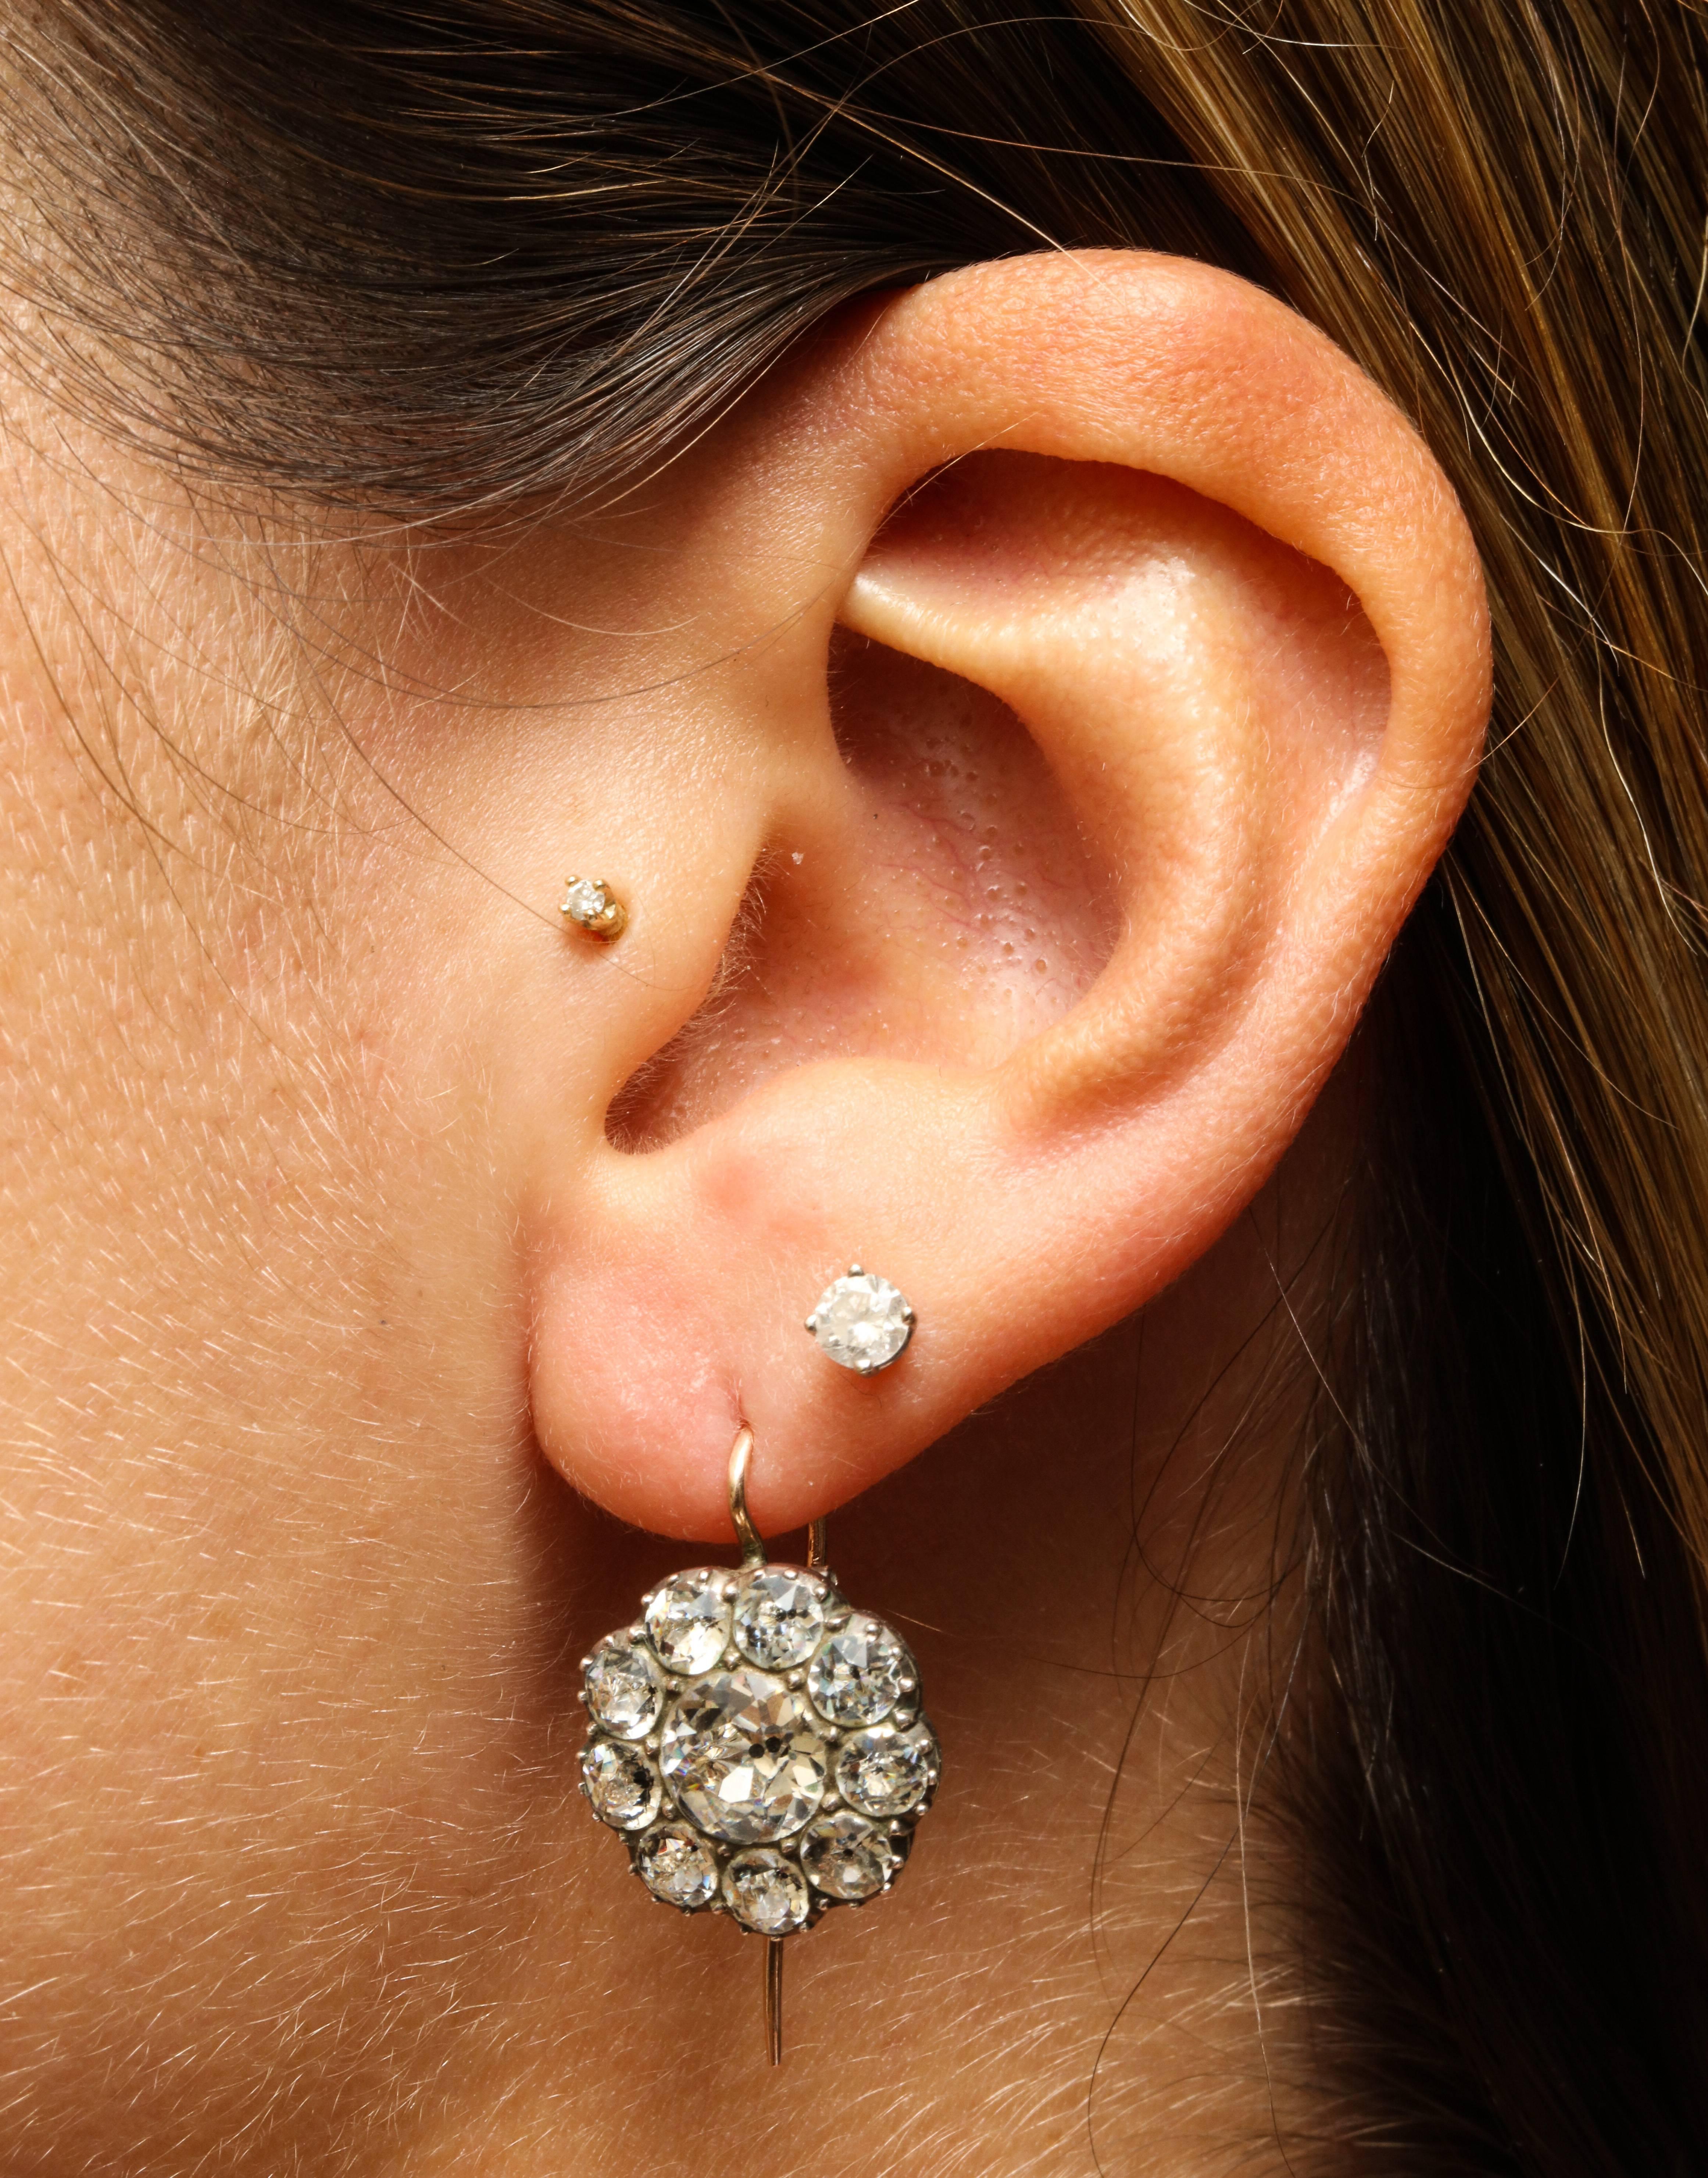 pasting earrings